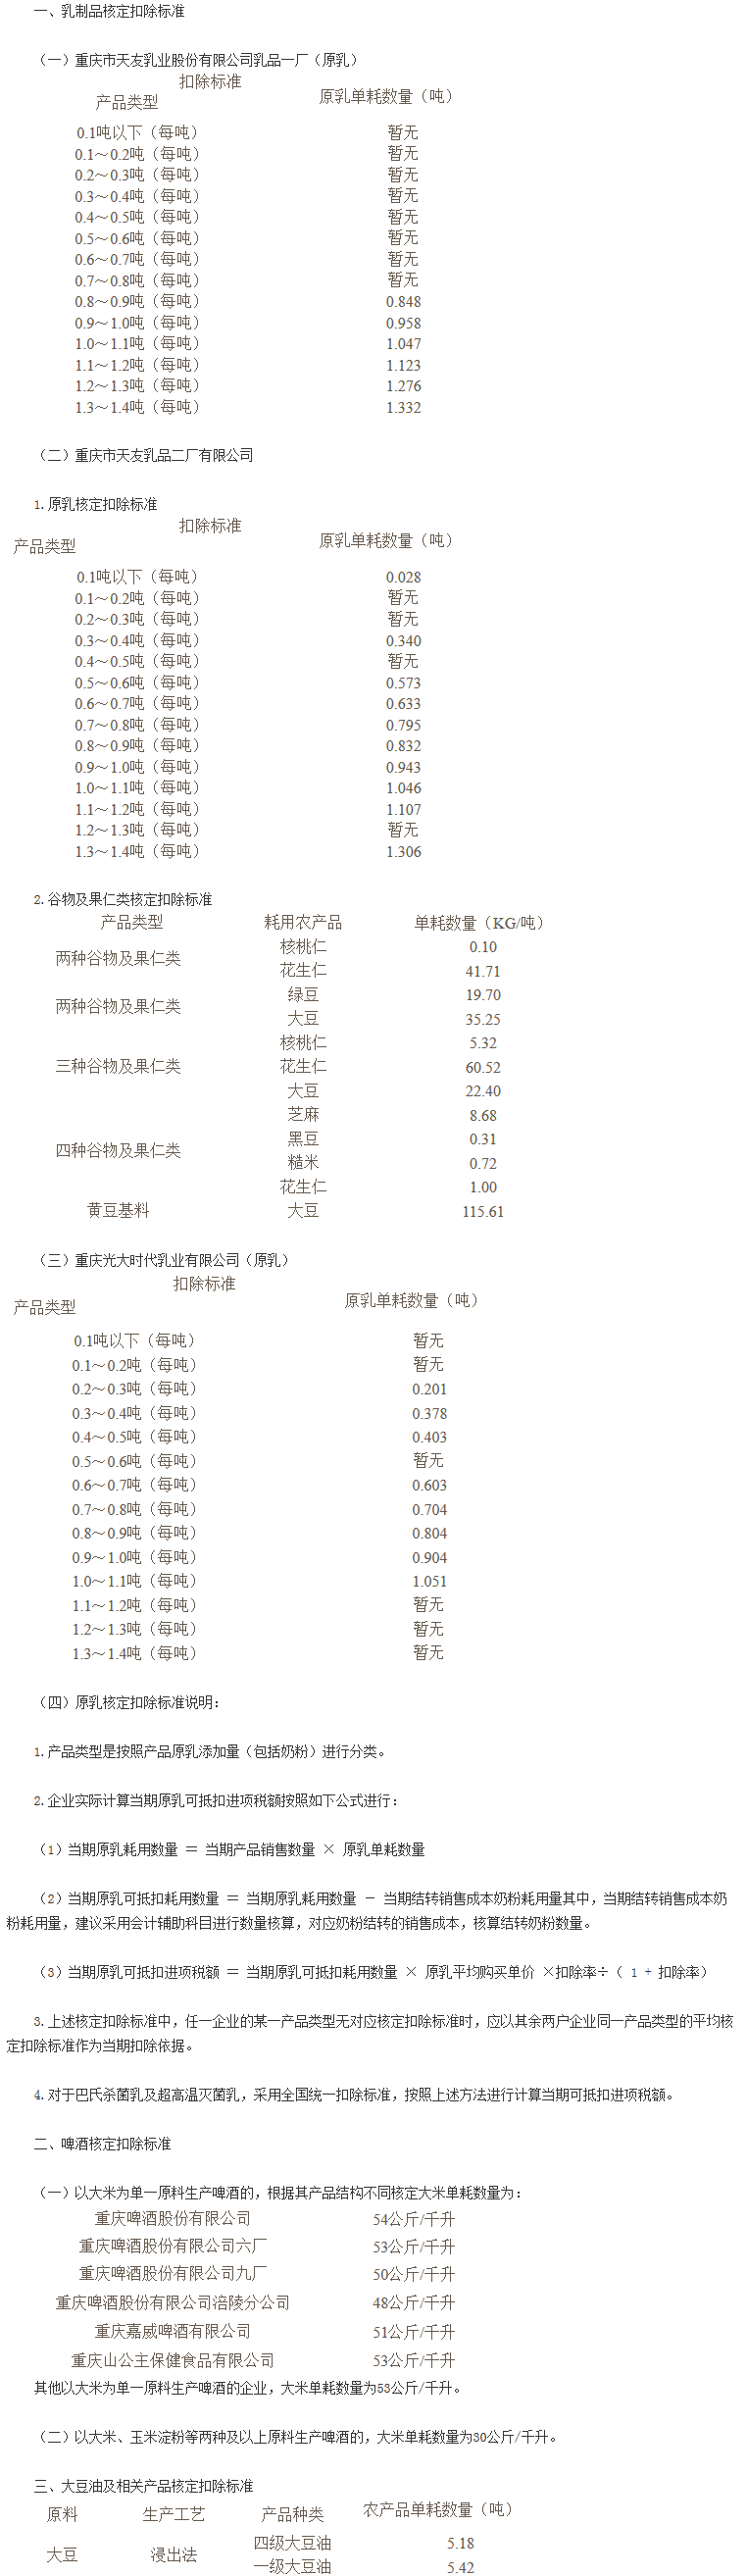 《重庆市国家税务局关于调整部分农产品增值税进项税额核定扣除标准的公告》重庆市国家税务局公告2017年第4号